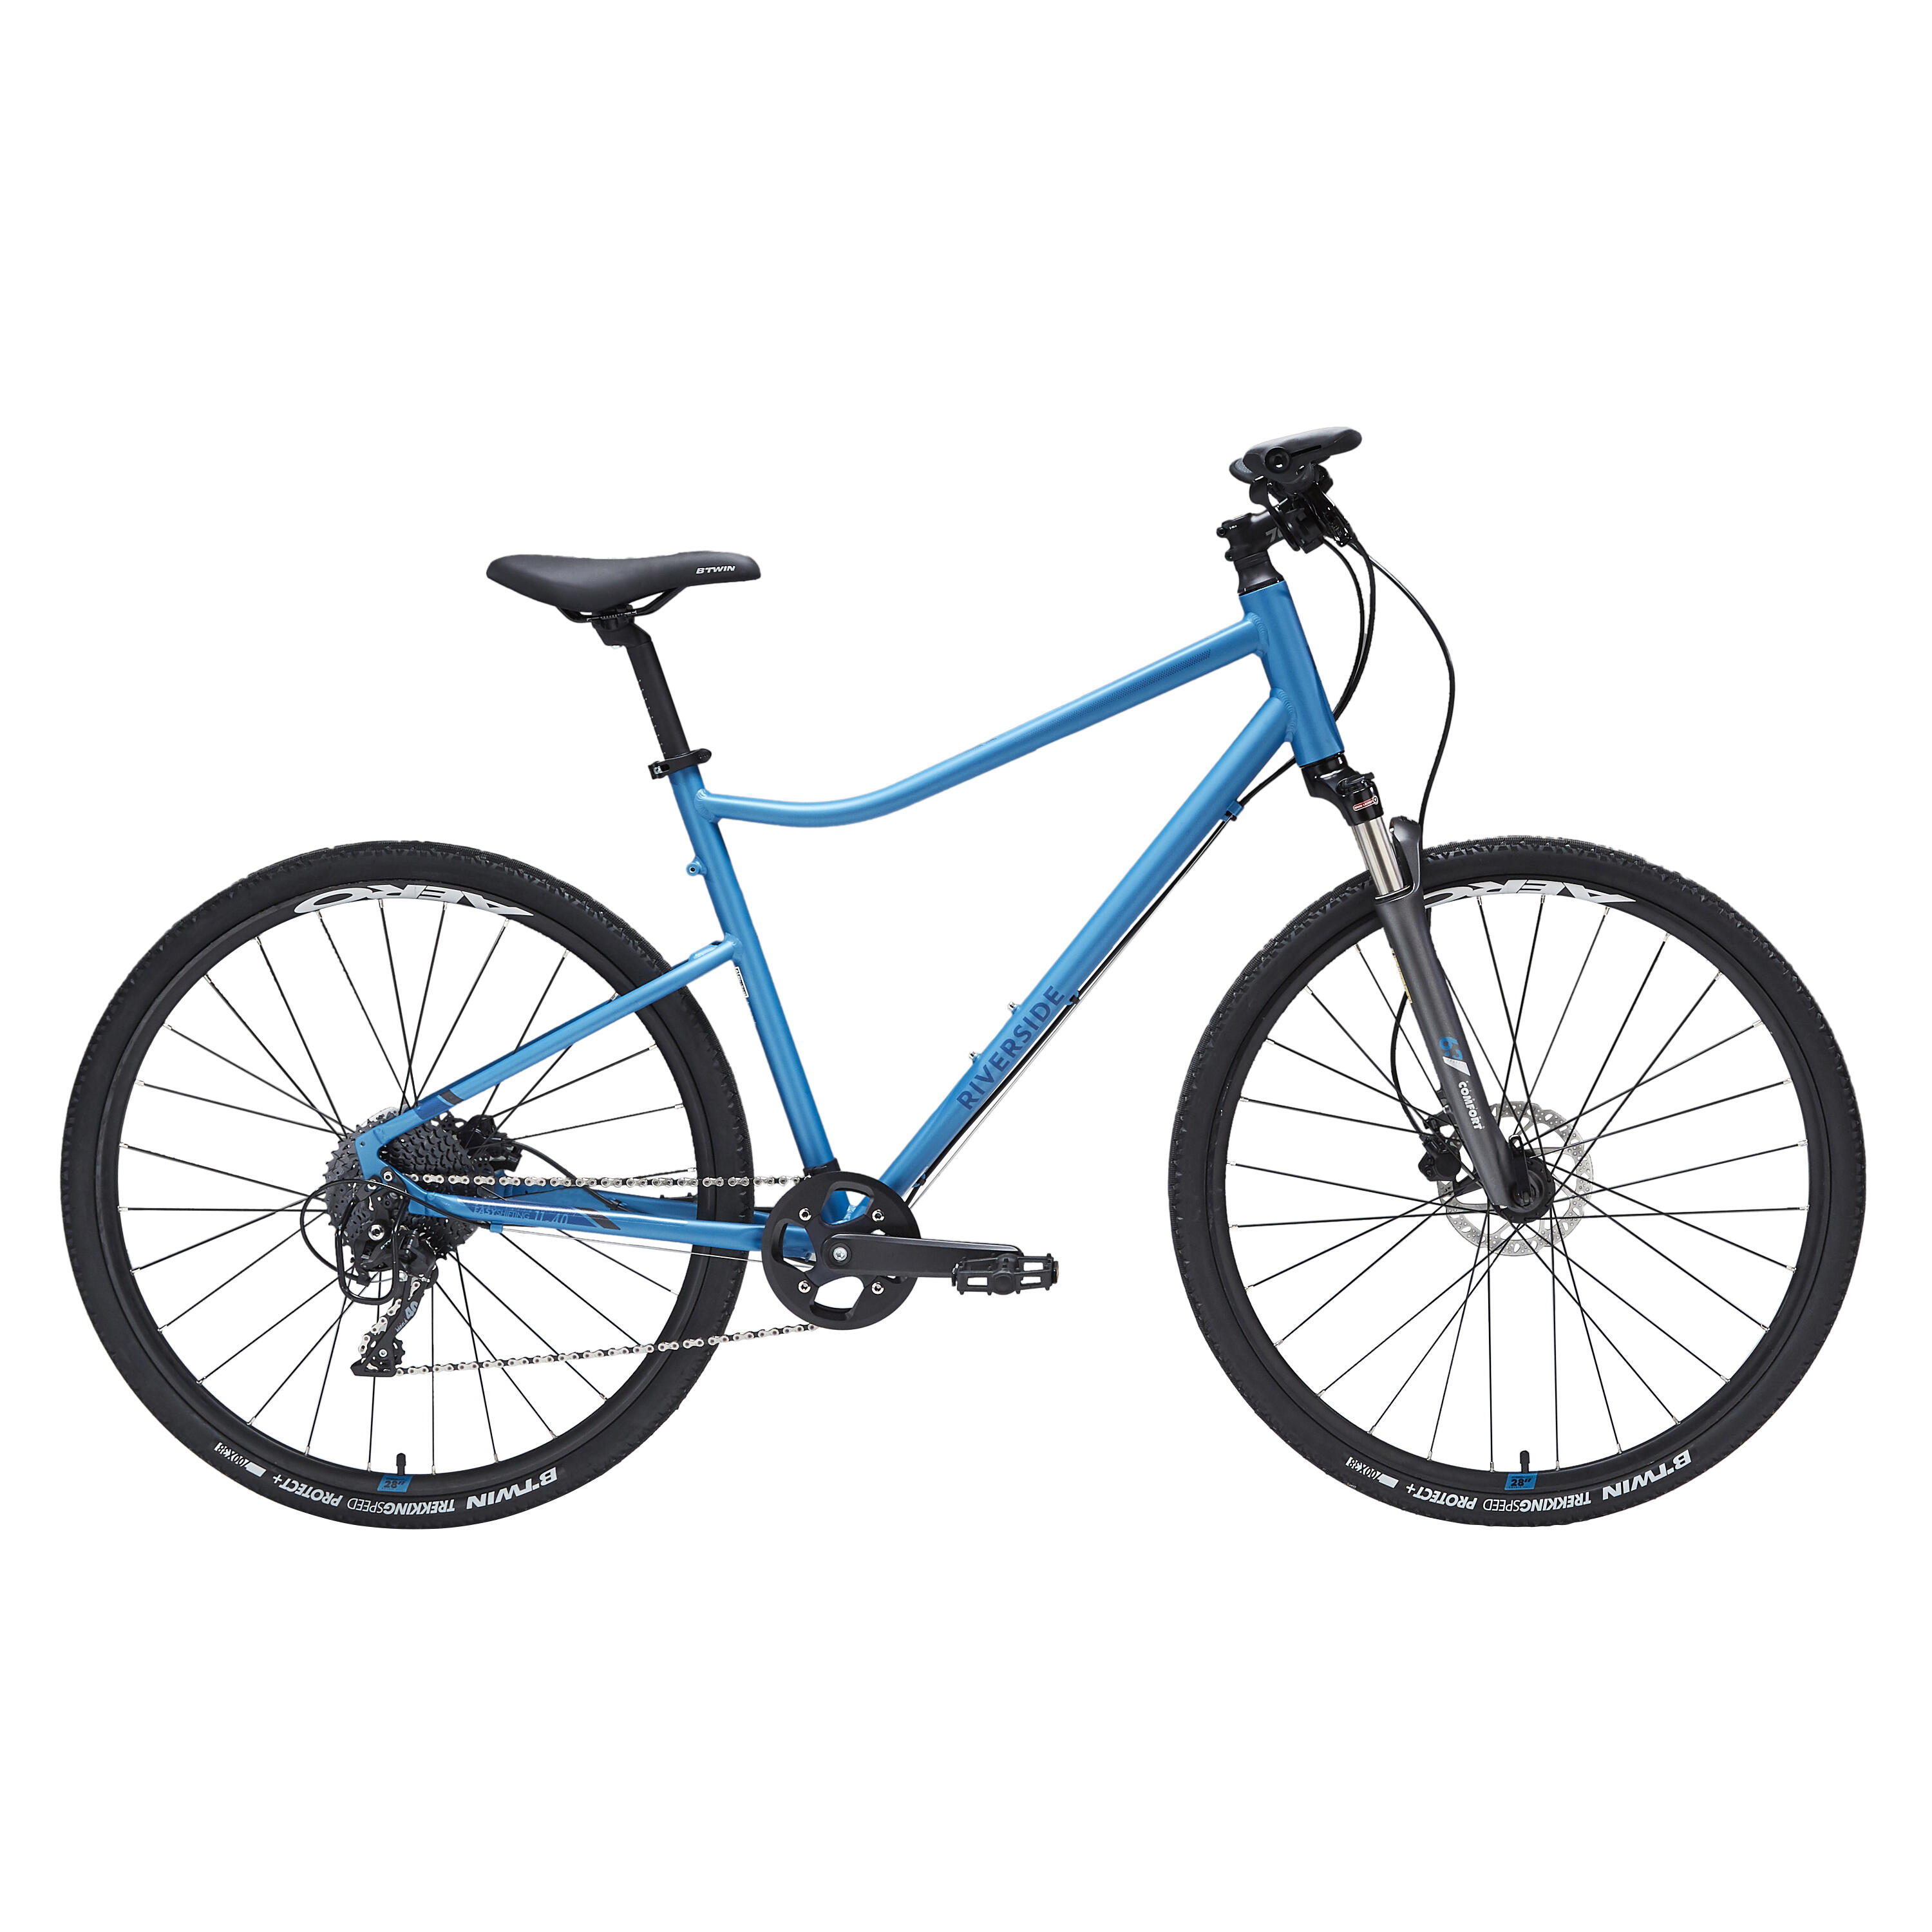 Bicicletă polivalentă Riverside 900 Albastru decathlon.ro imagine 2022